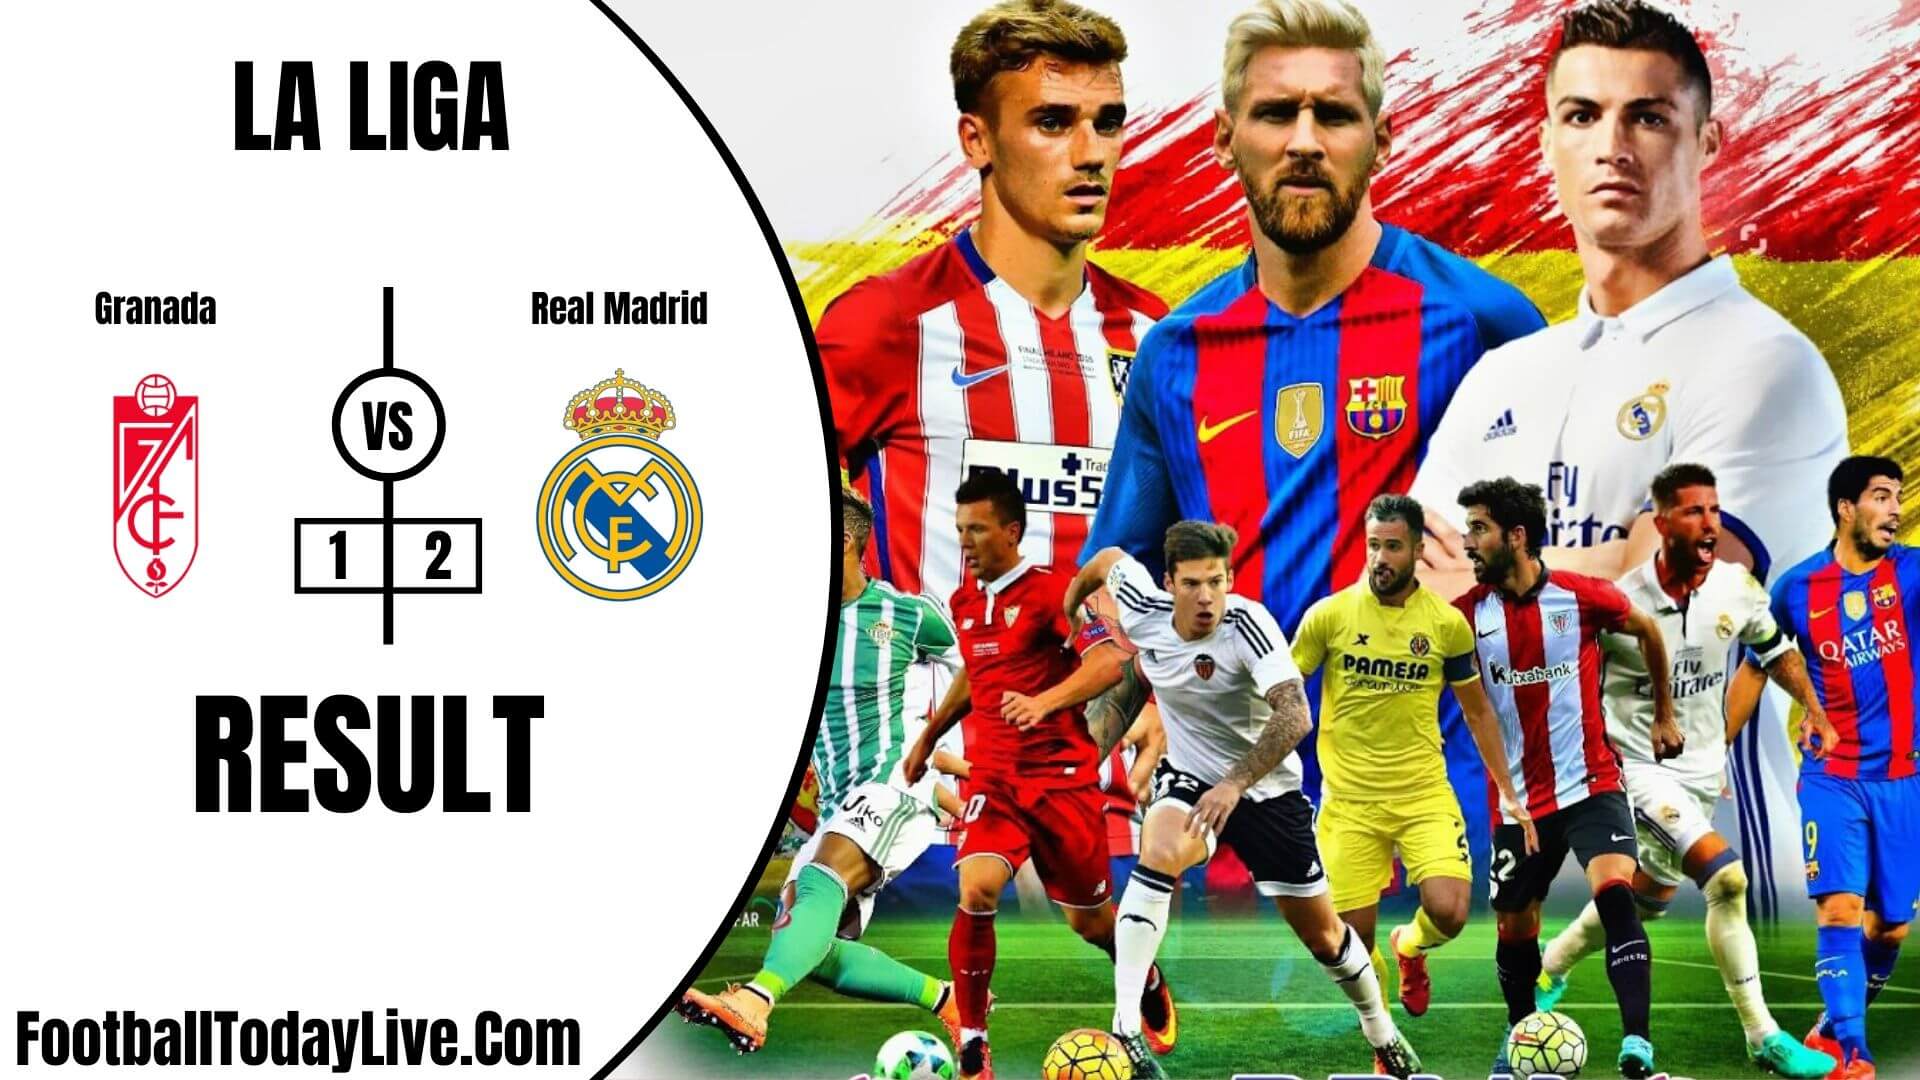 Granada Vs Real Madrid | La Liga Week 36 Result 2020